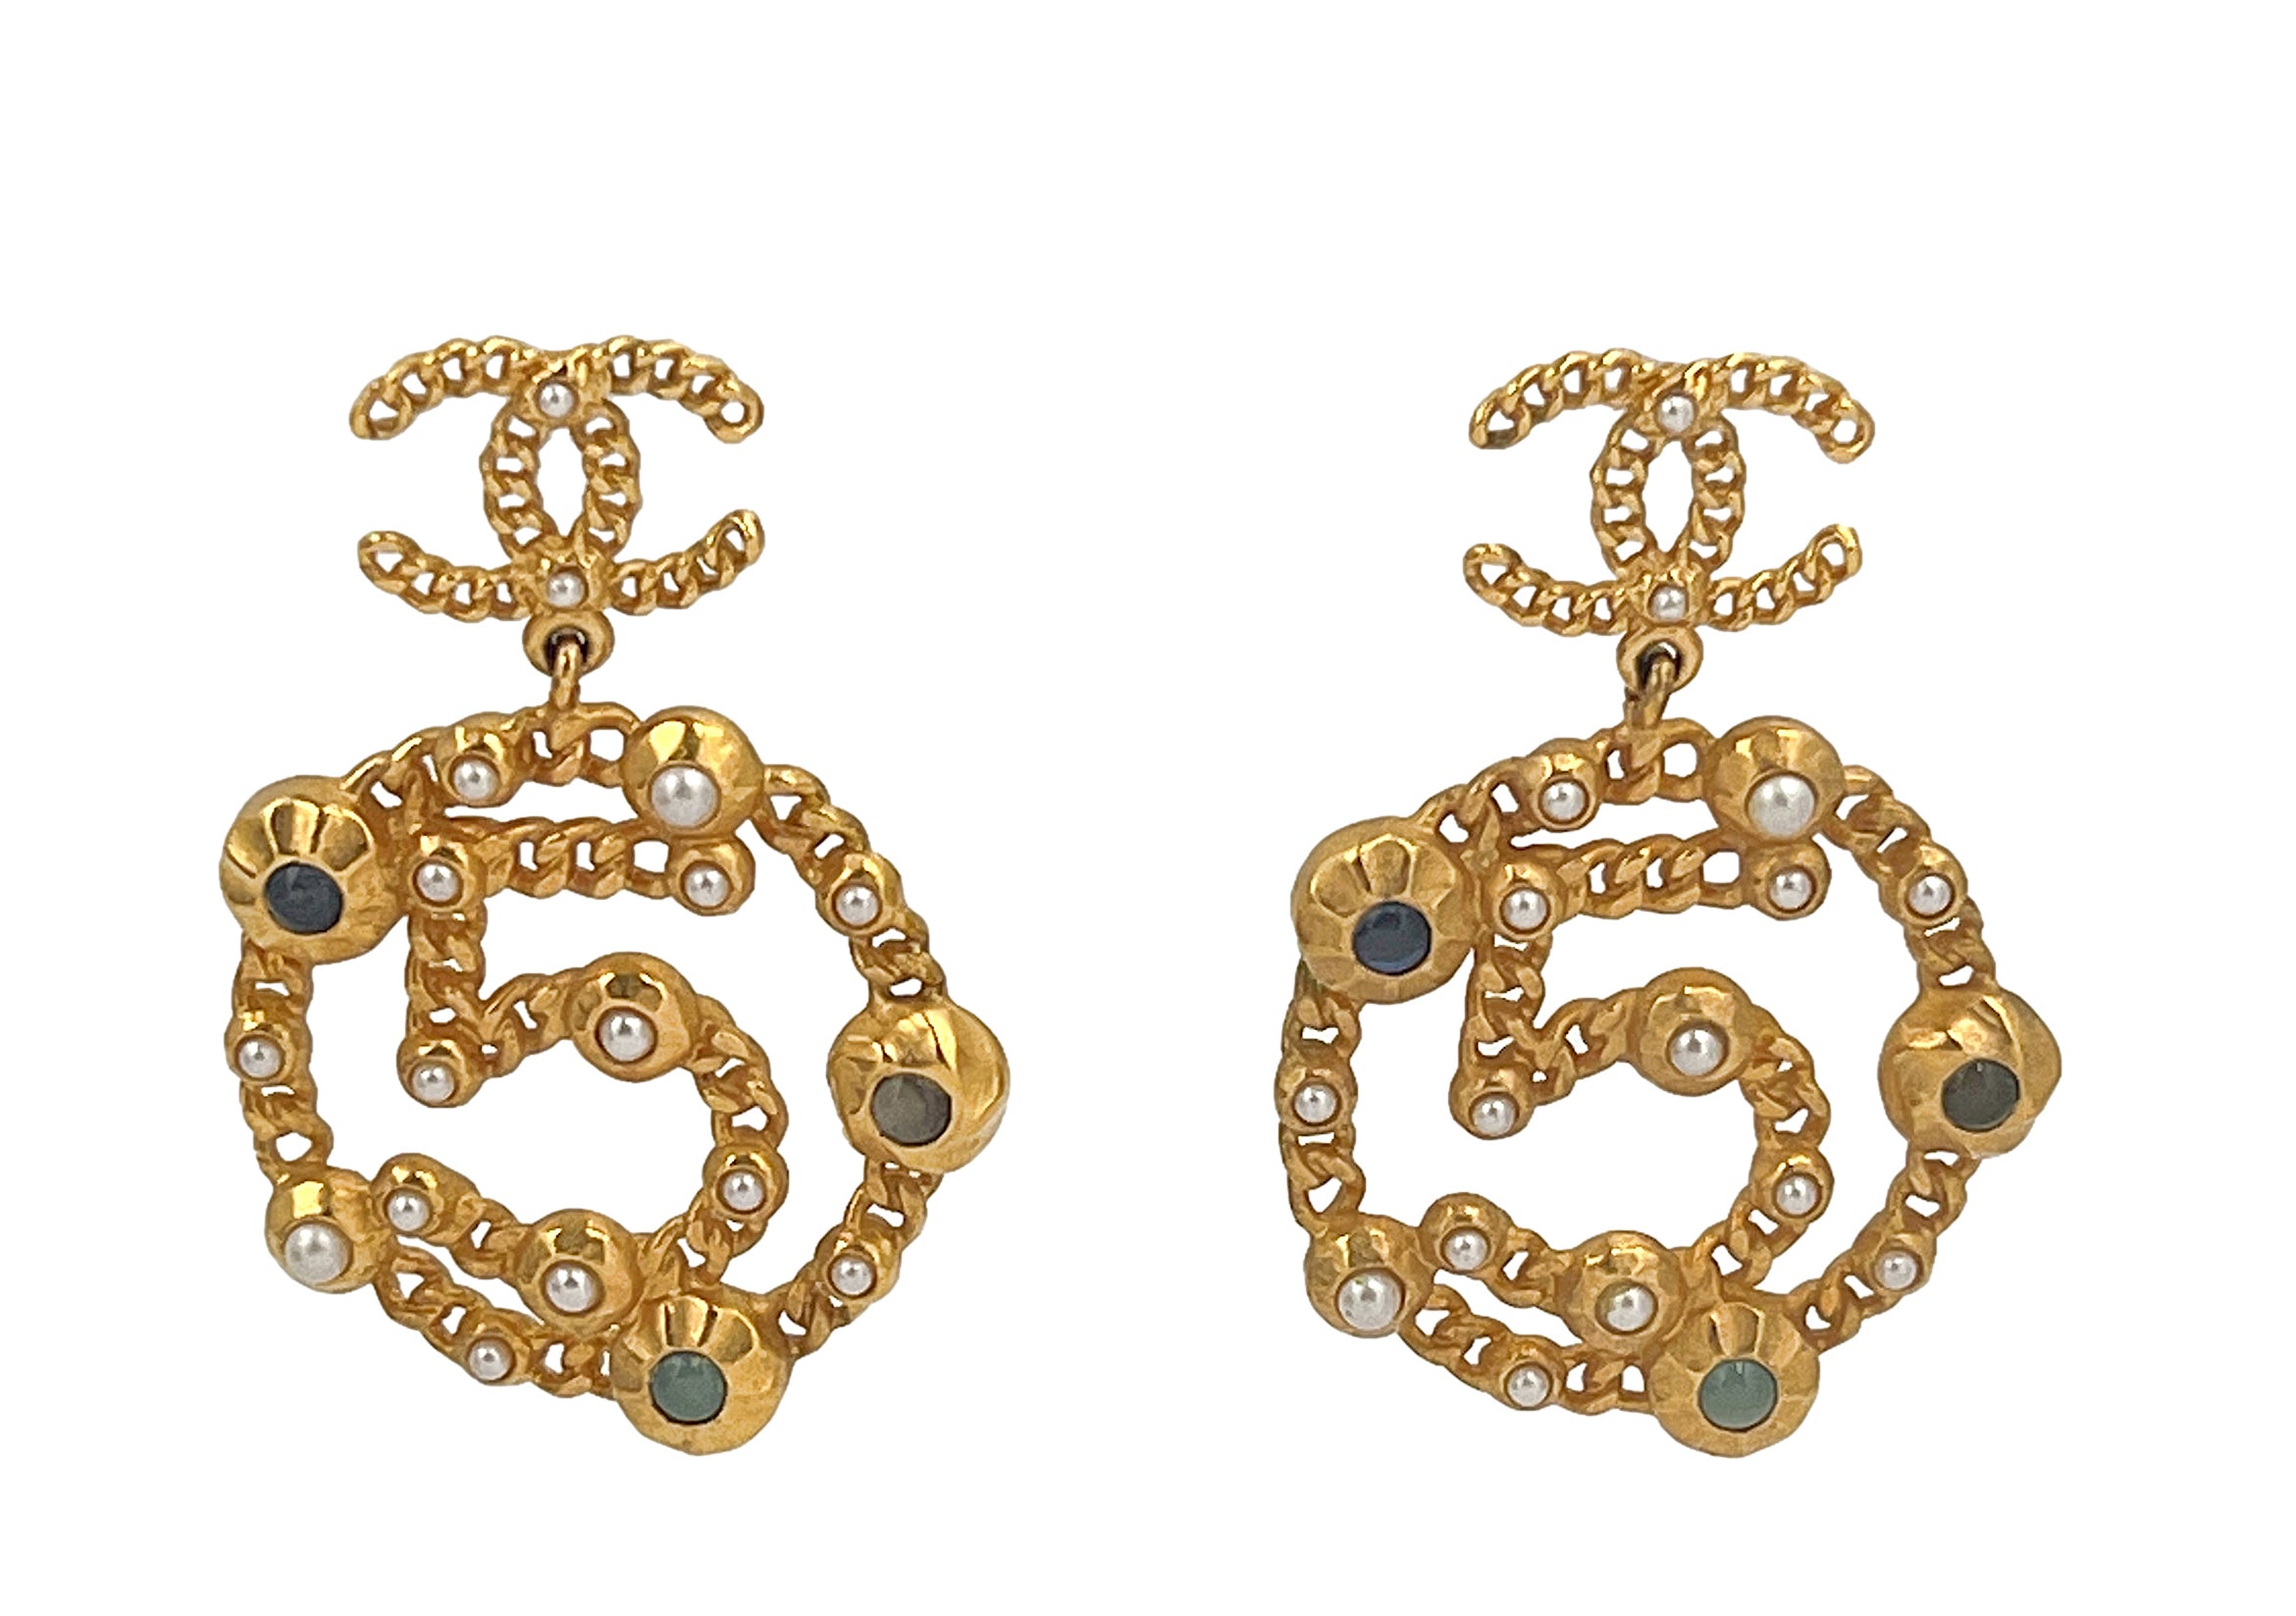 Chanel gold earrings  Chanel earrings, Bvlgari earrings, Chanel